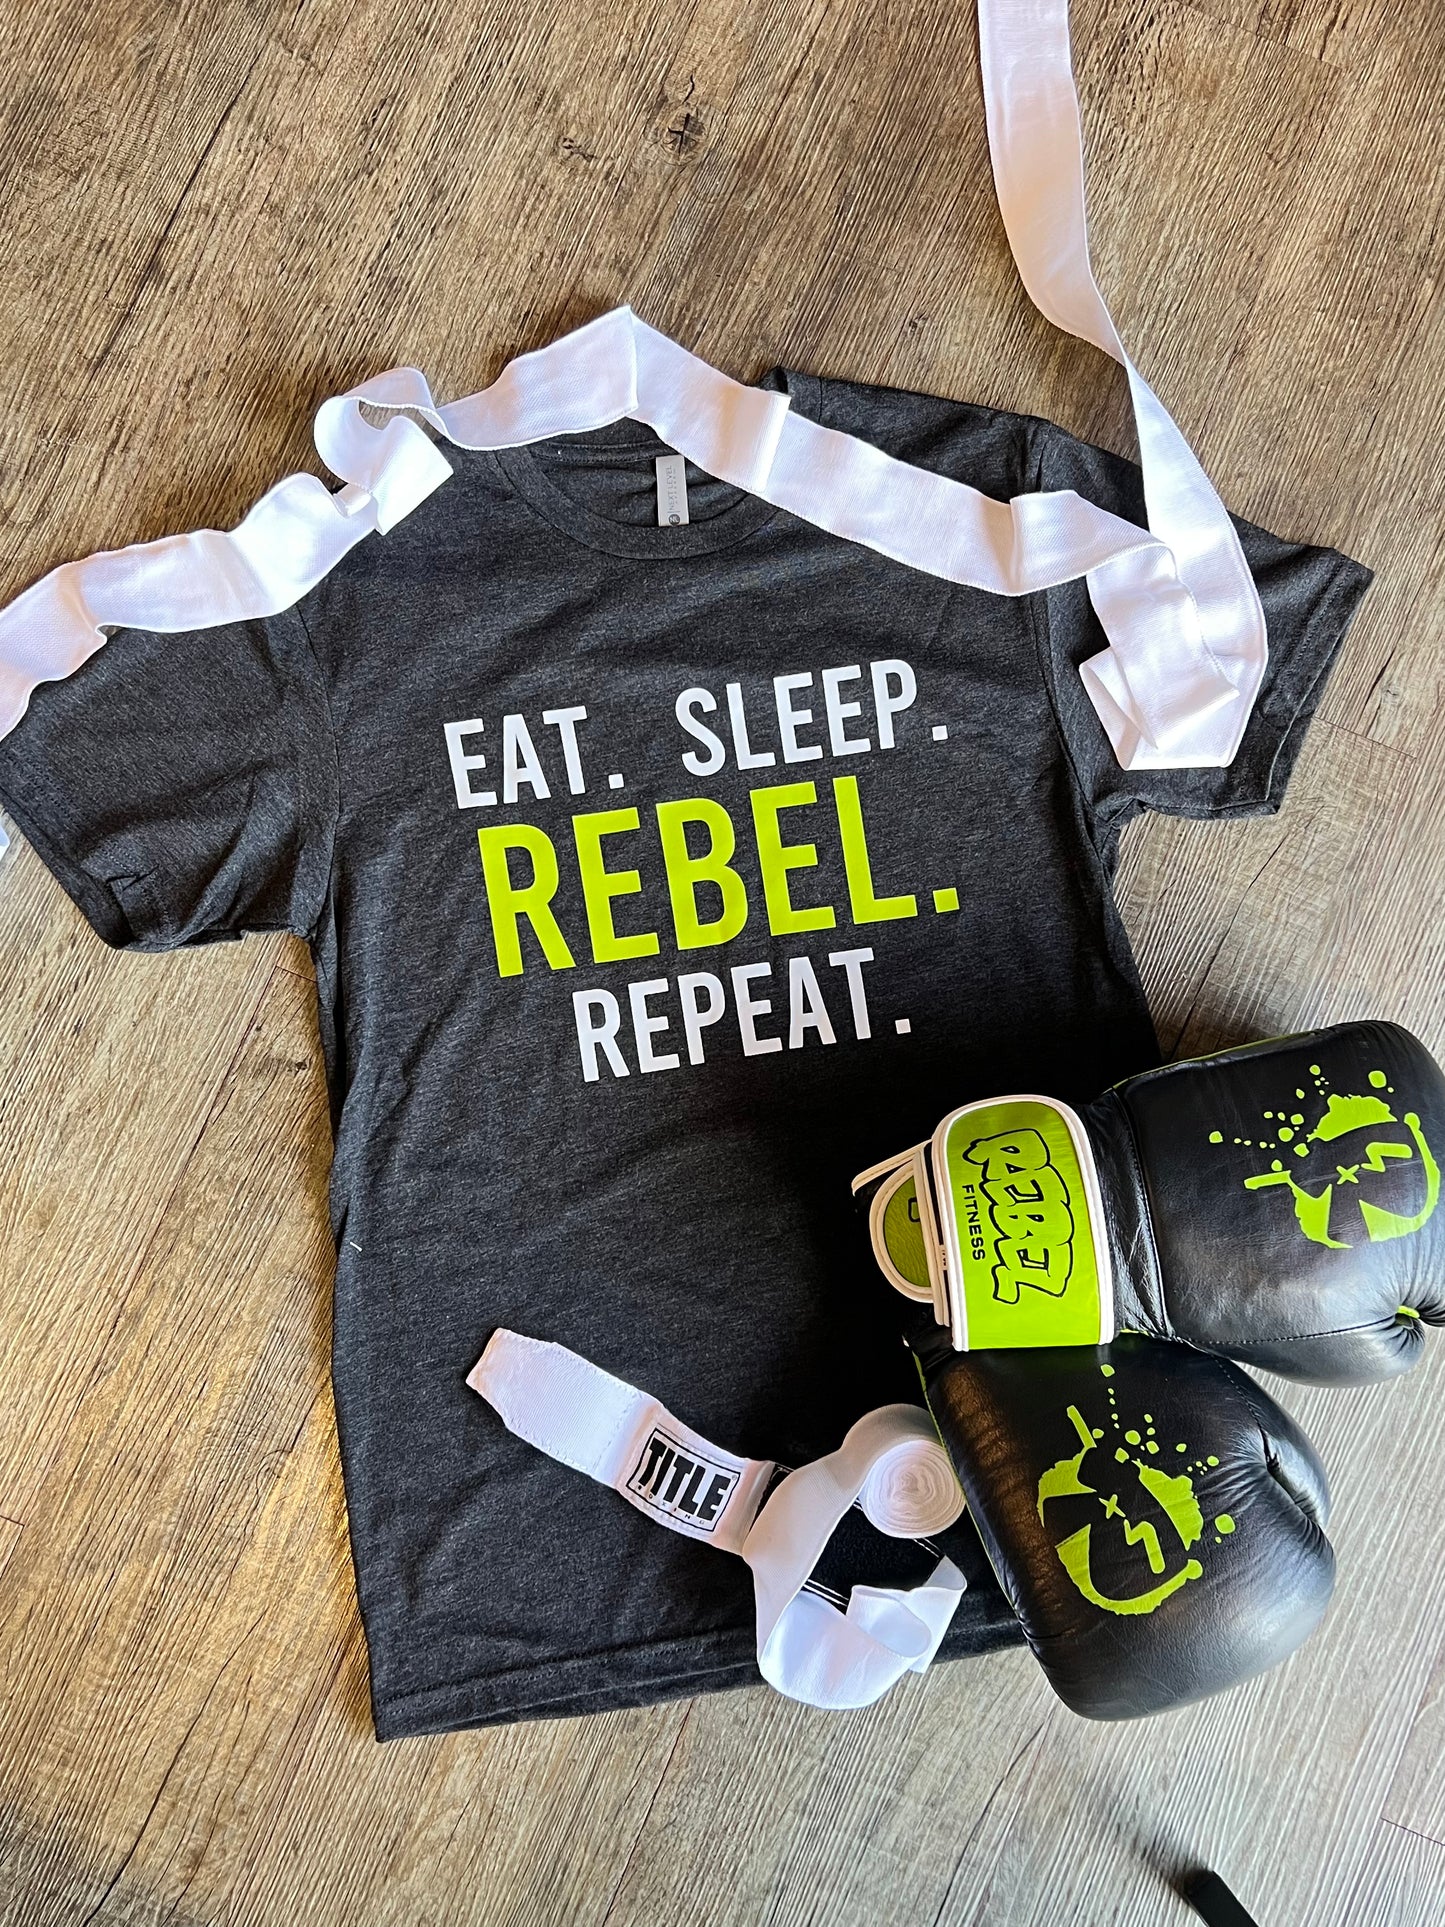 Eat. Sleep. Rebel. Repeat.